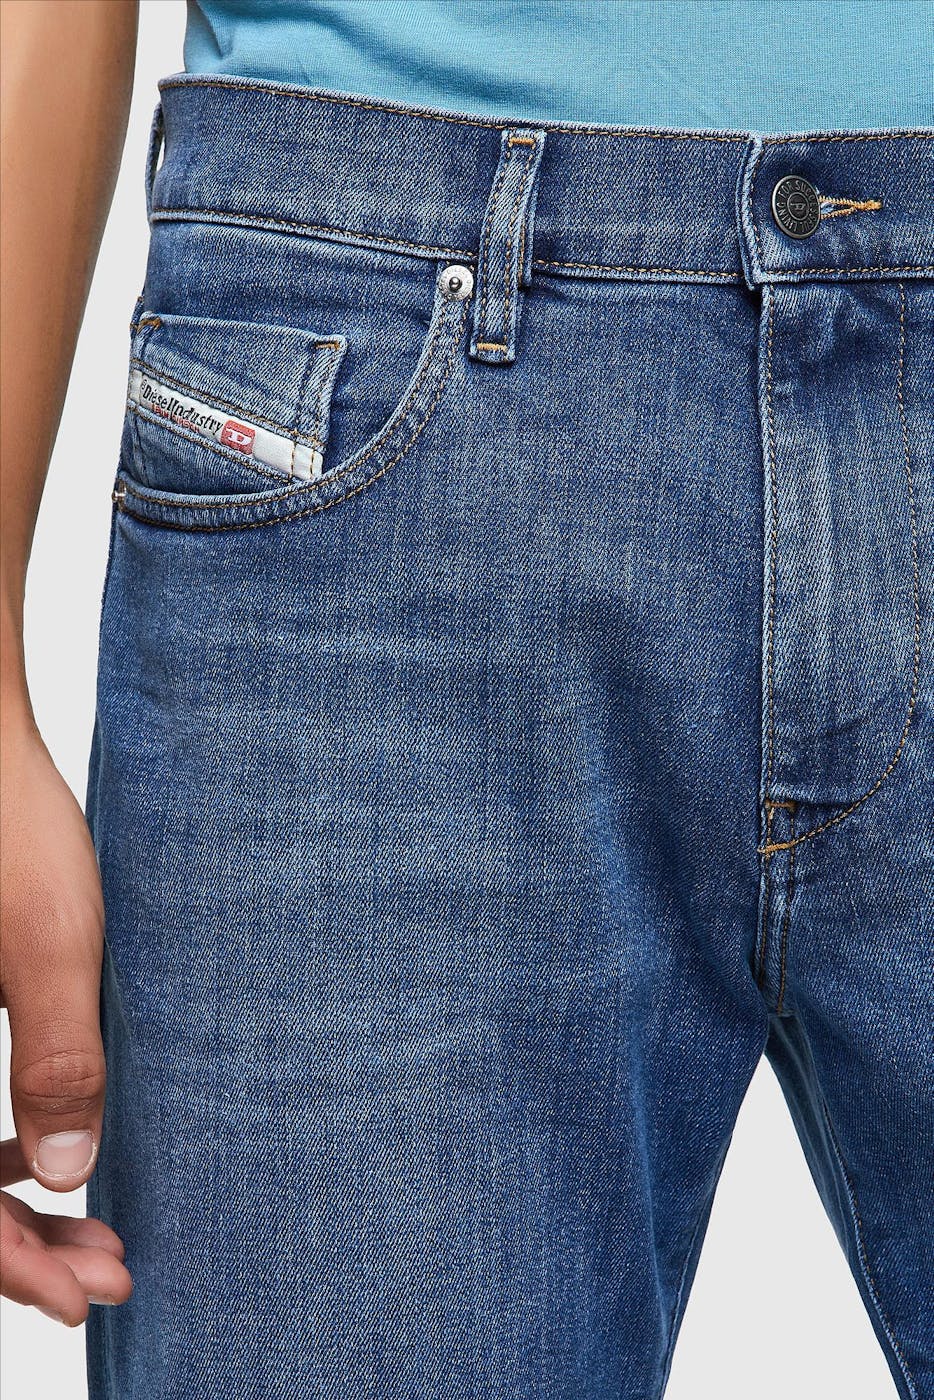 Diesel - Blauwe D-Strukt Slim jeans